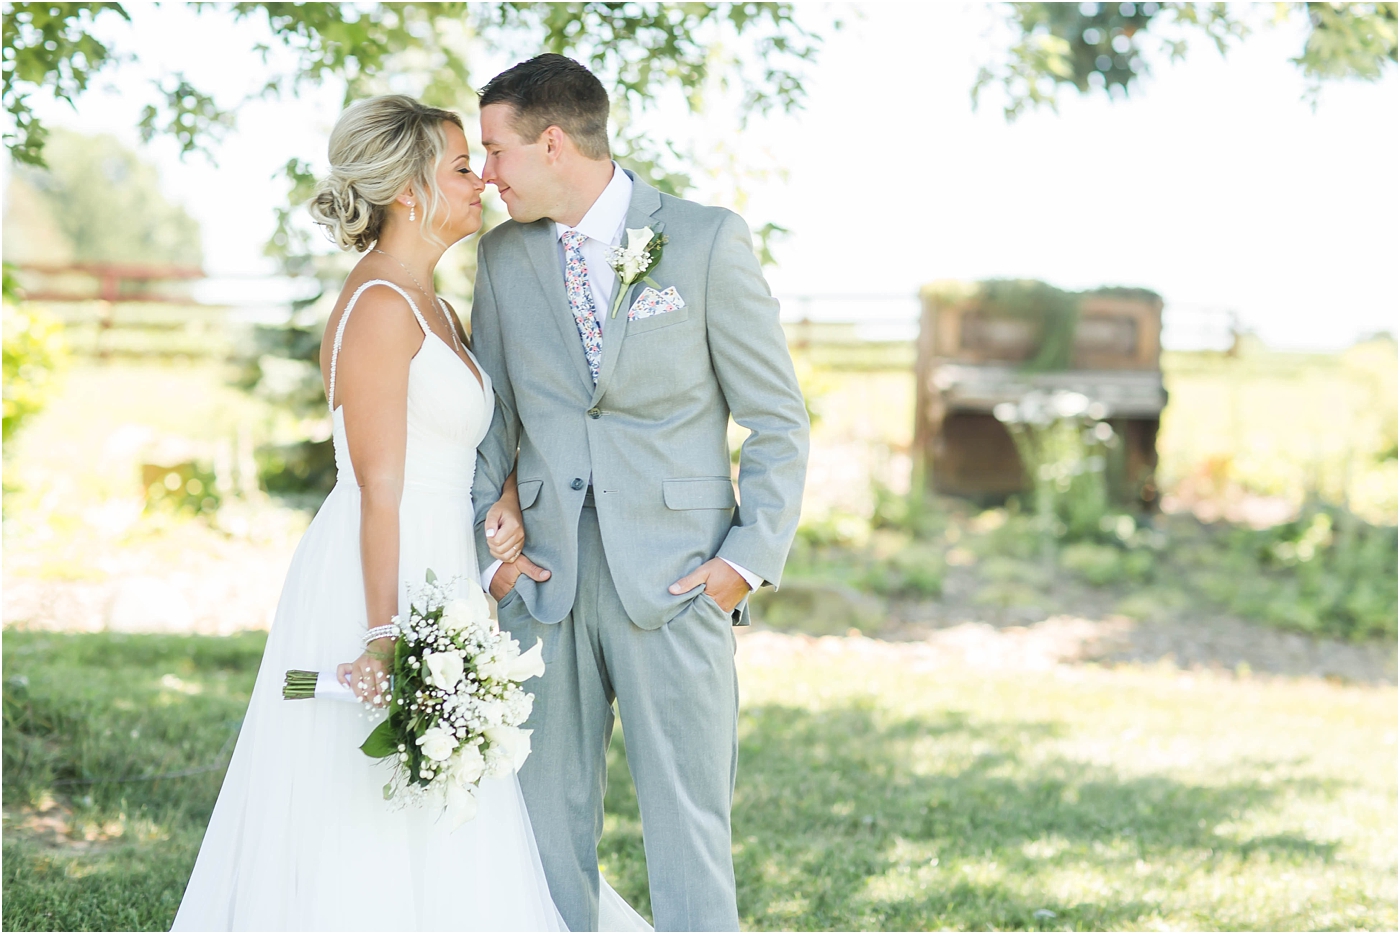 Loren Jackson Photography,Peacock Ridge Wedding,Photographer Akron Ohio,Rustic Barn Wedding,cleveland wedding photography,